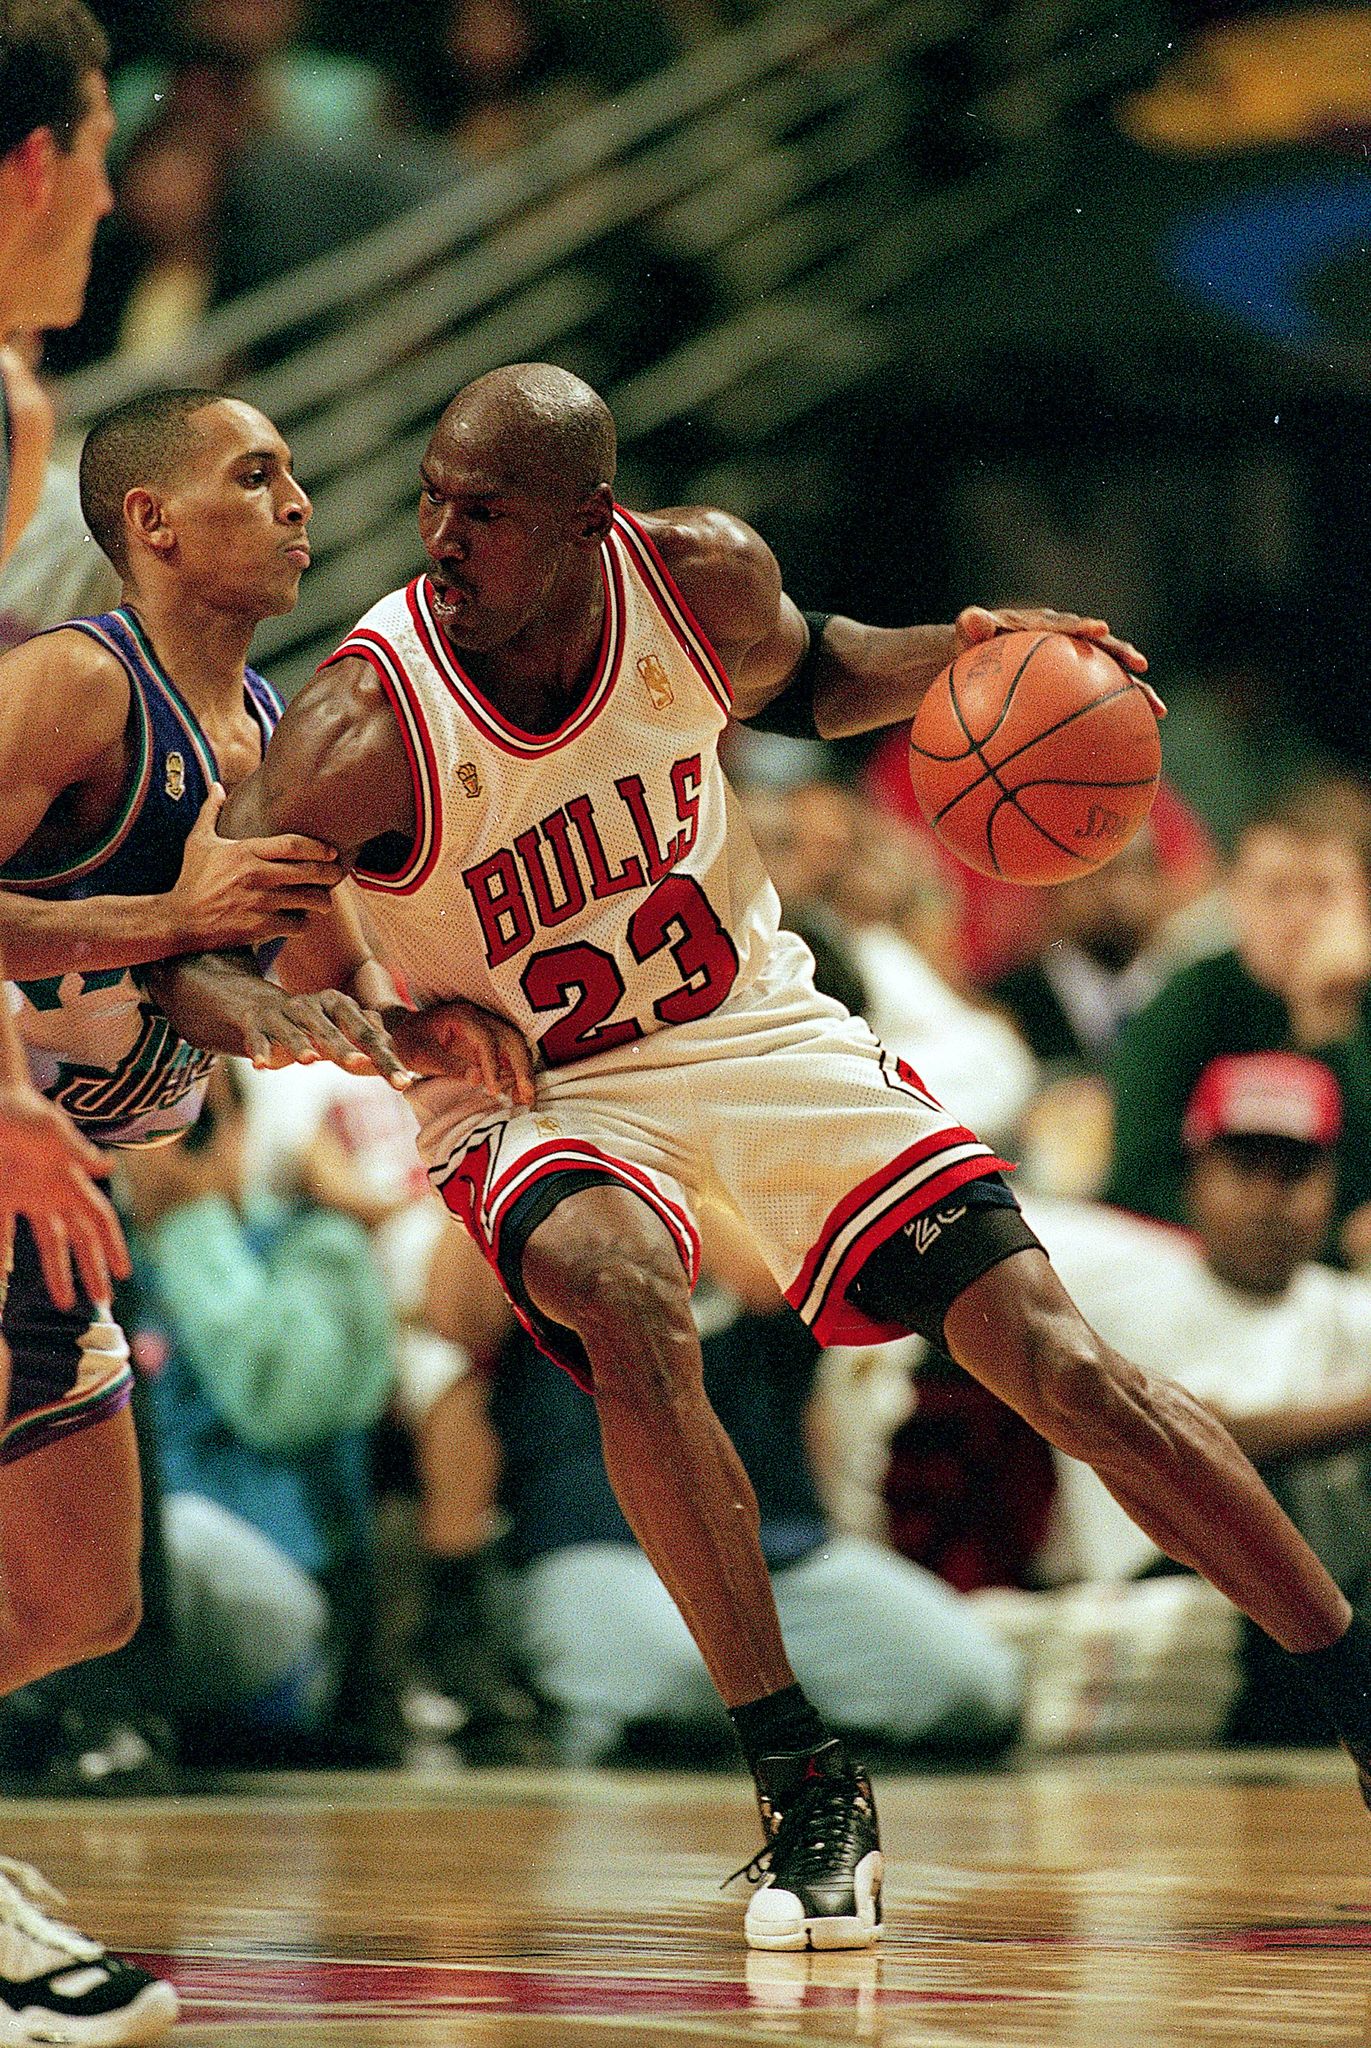 Jordan 12 Playoffs: The Hyped Sleeper? - 100wears